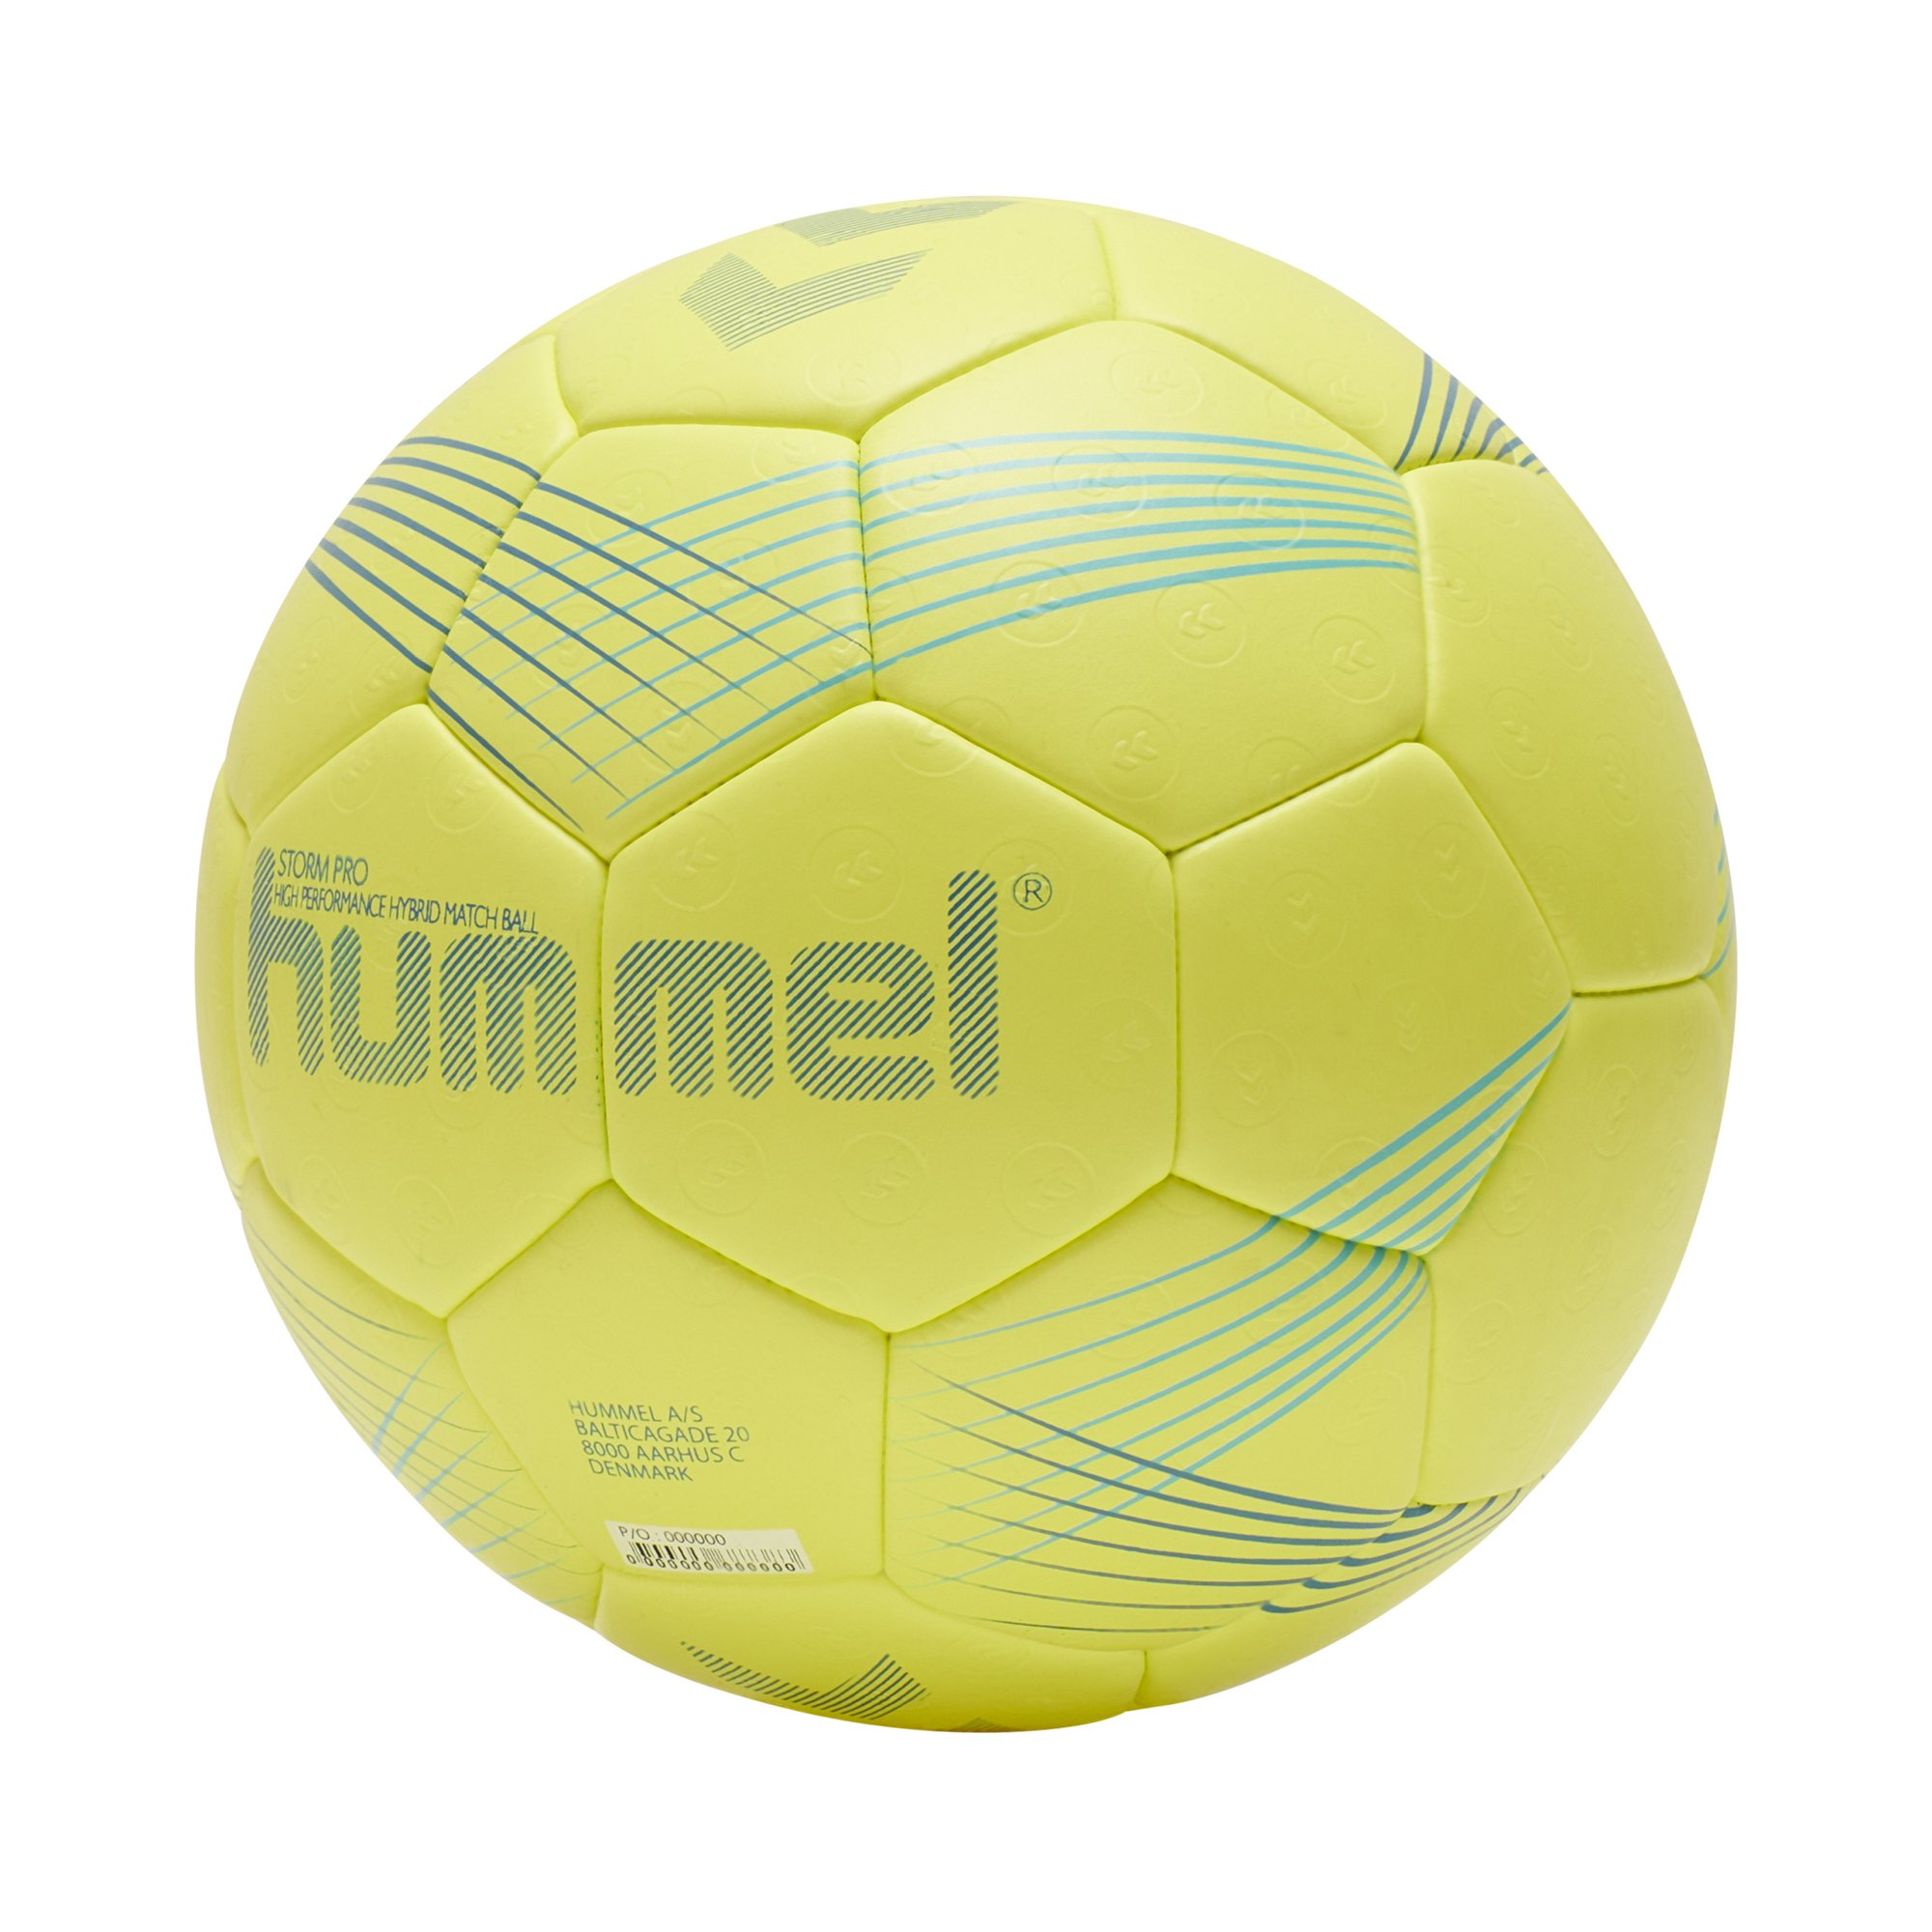 Hummel Storm Pro Handbälle - Handball